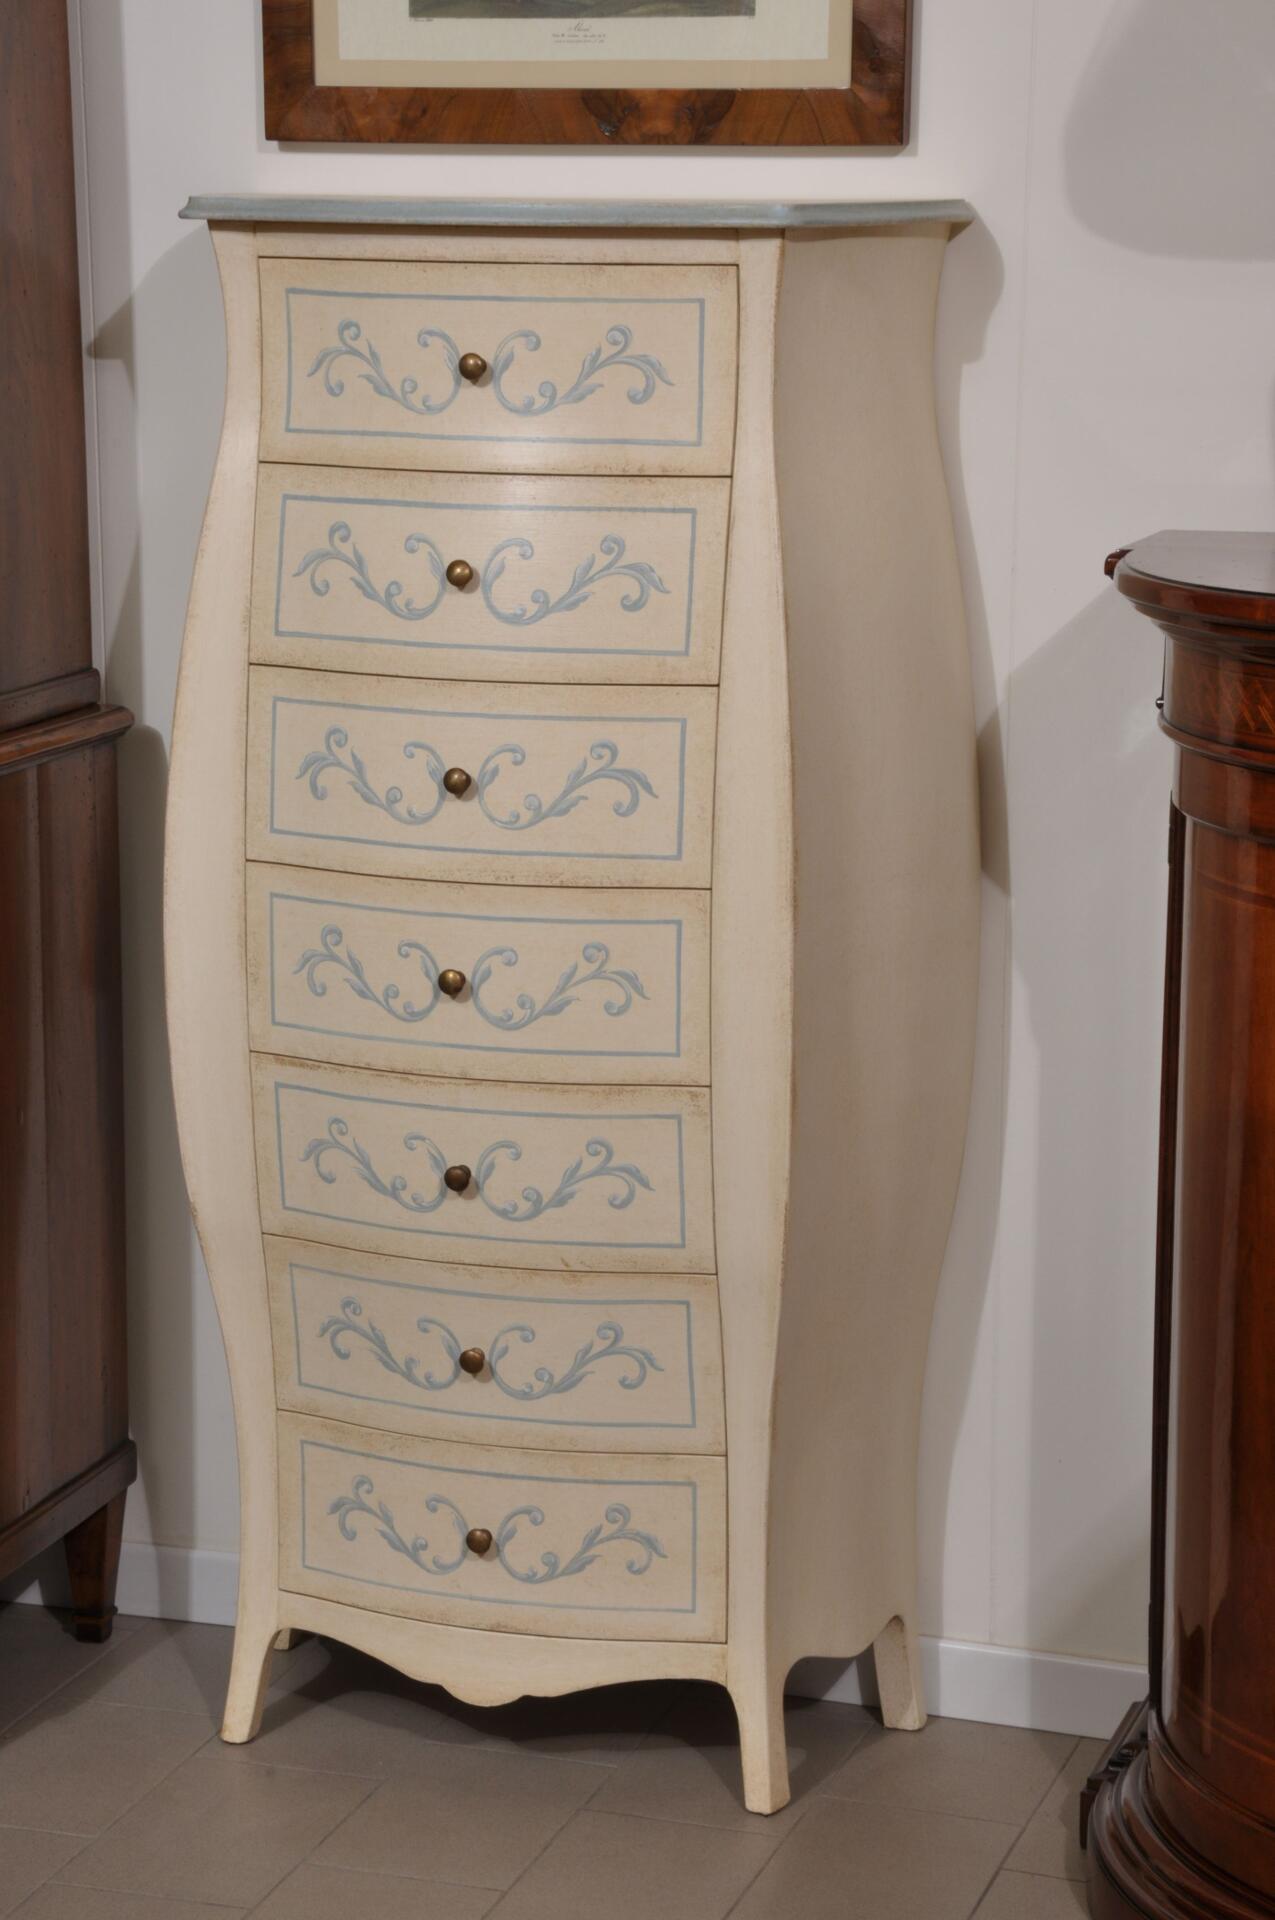 cassettiera bombata e decorata in legno massello laccata bianco e azzurro con barocchi